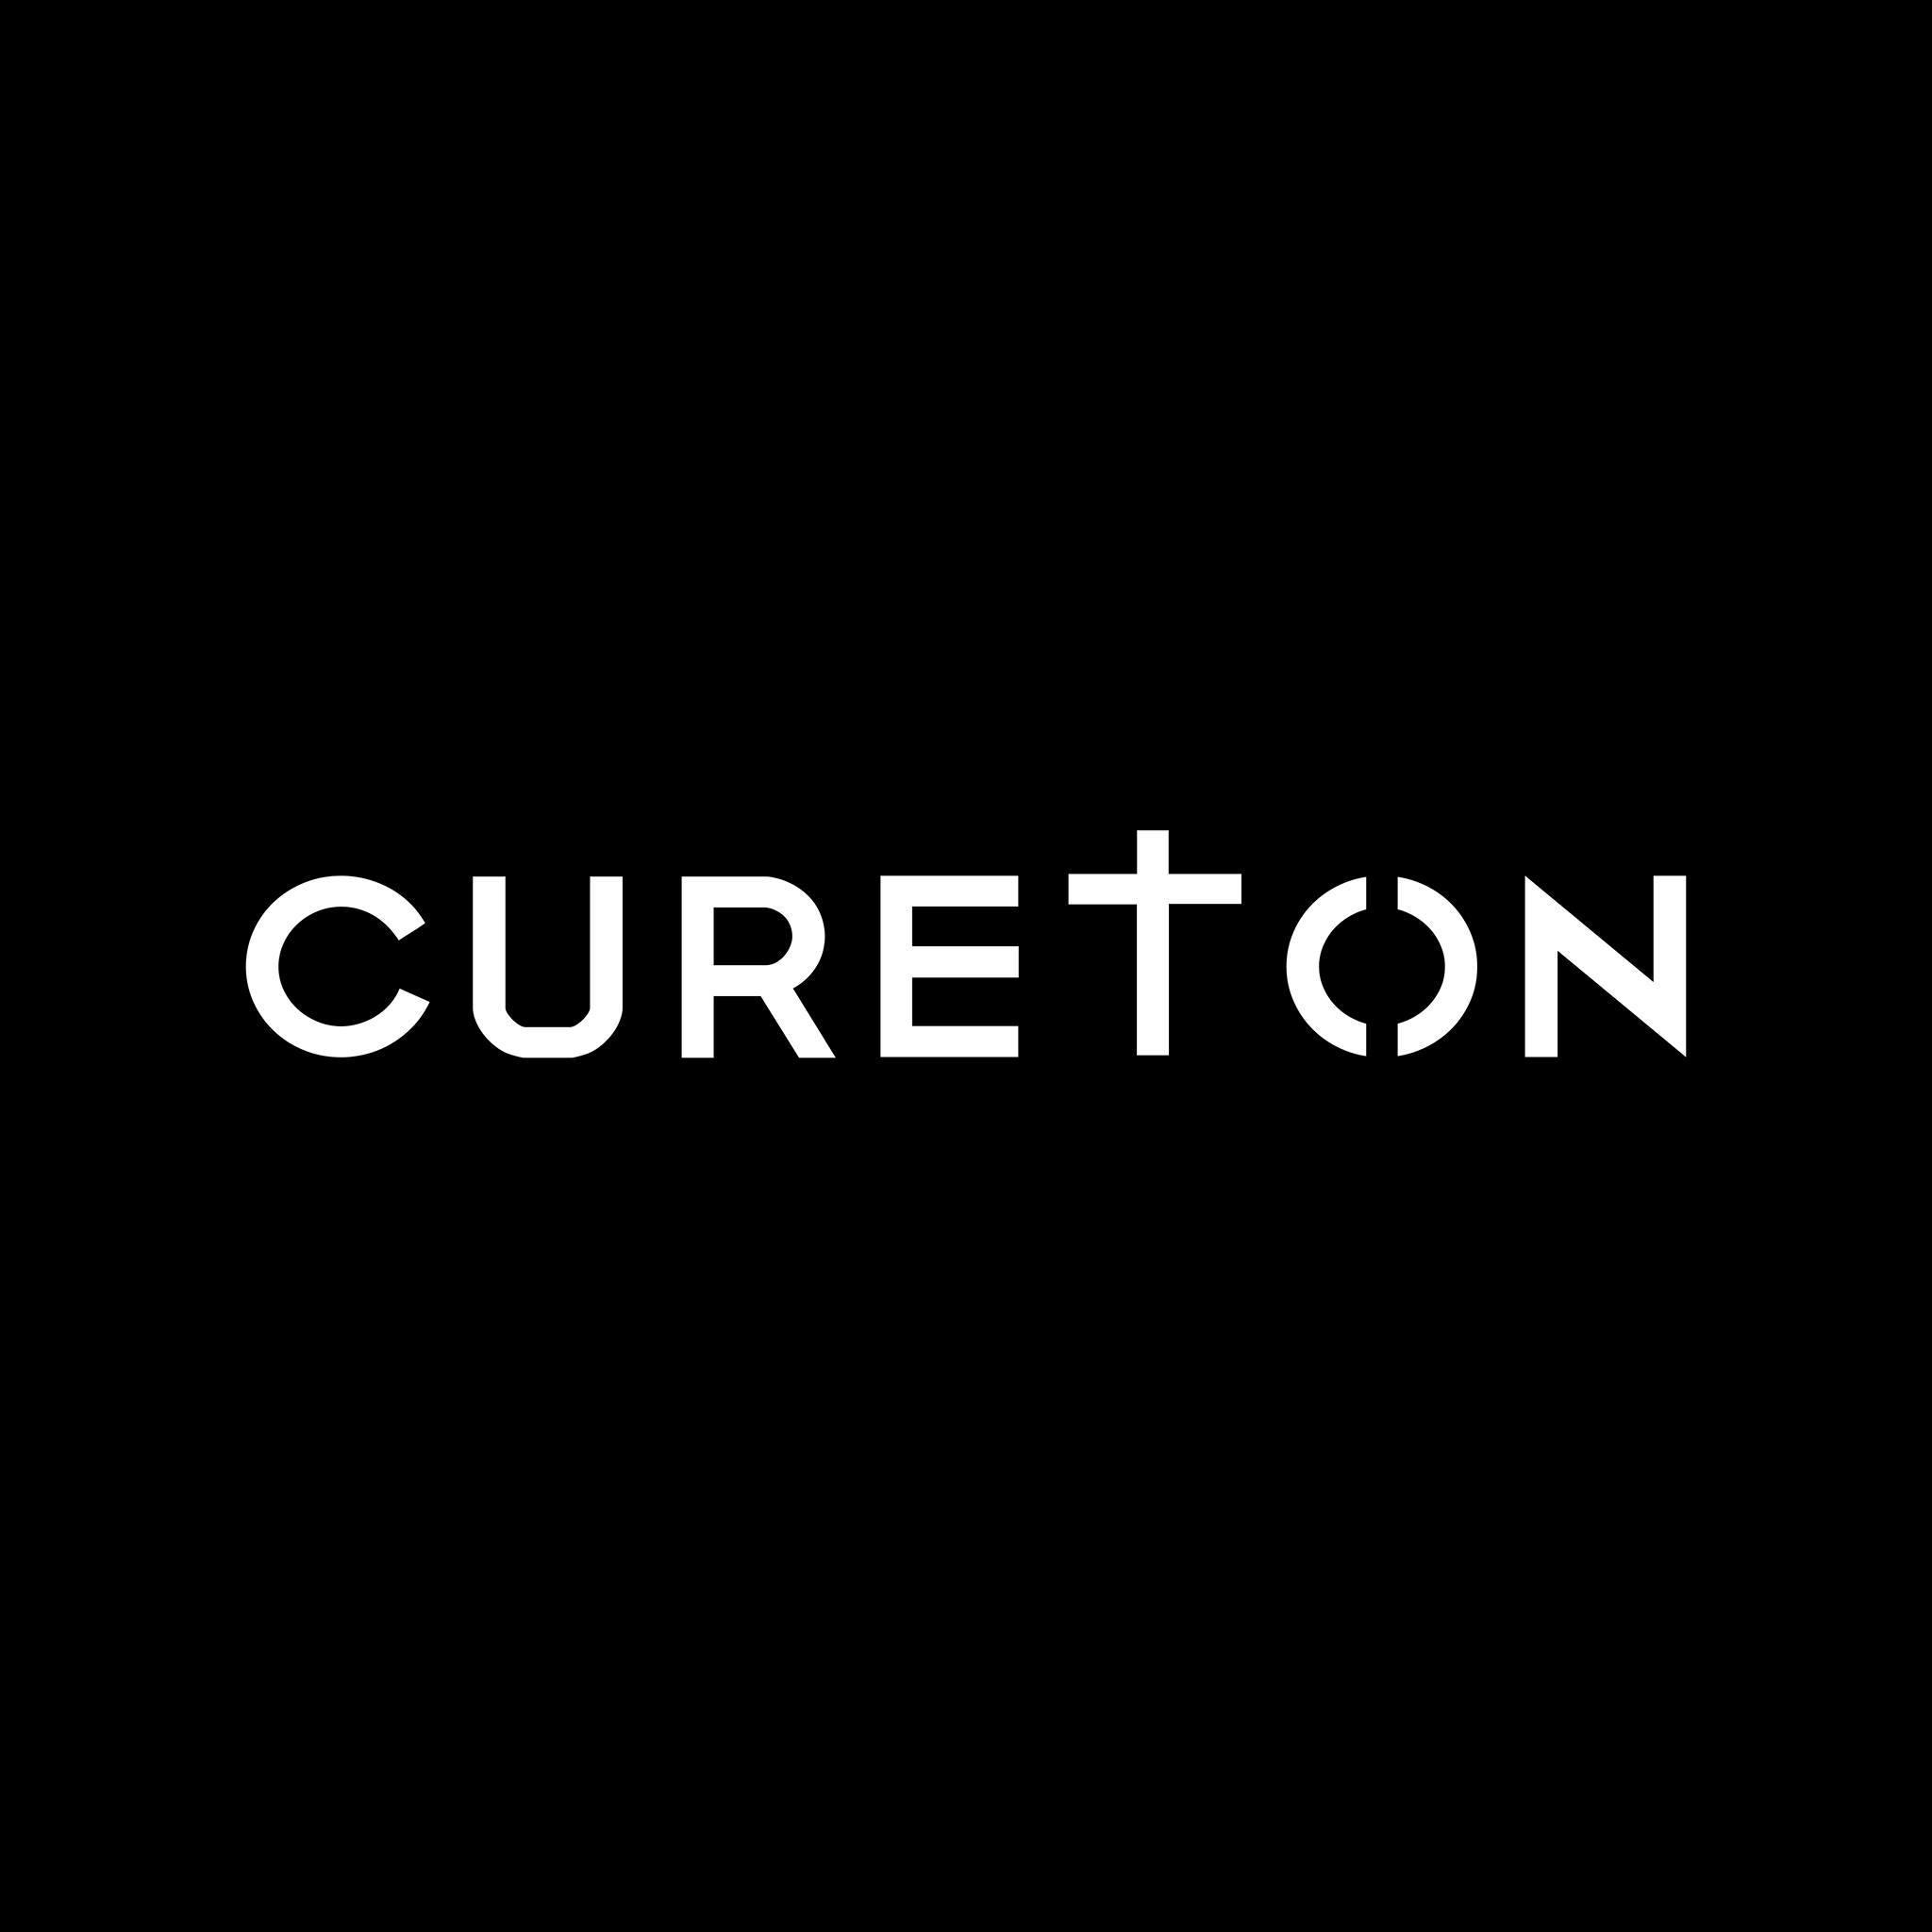 Cureton